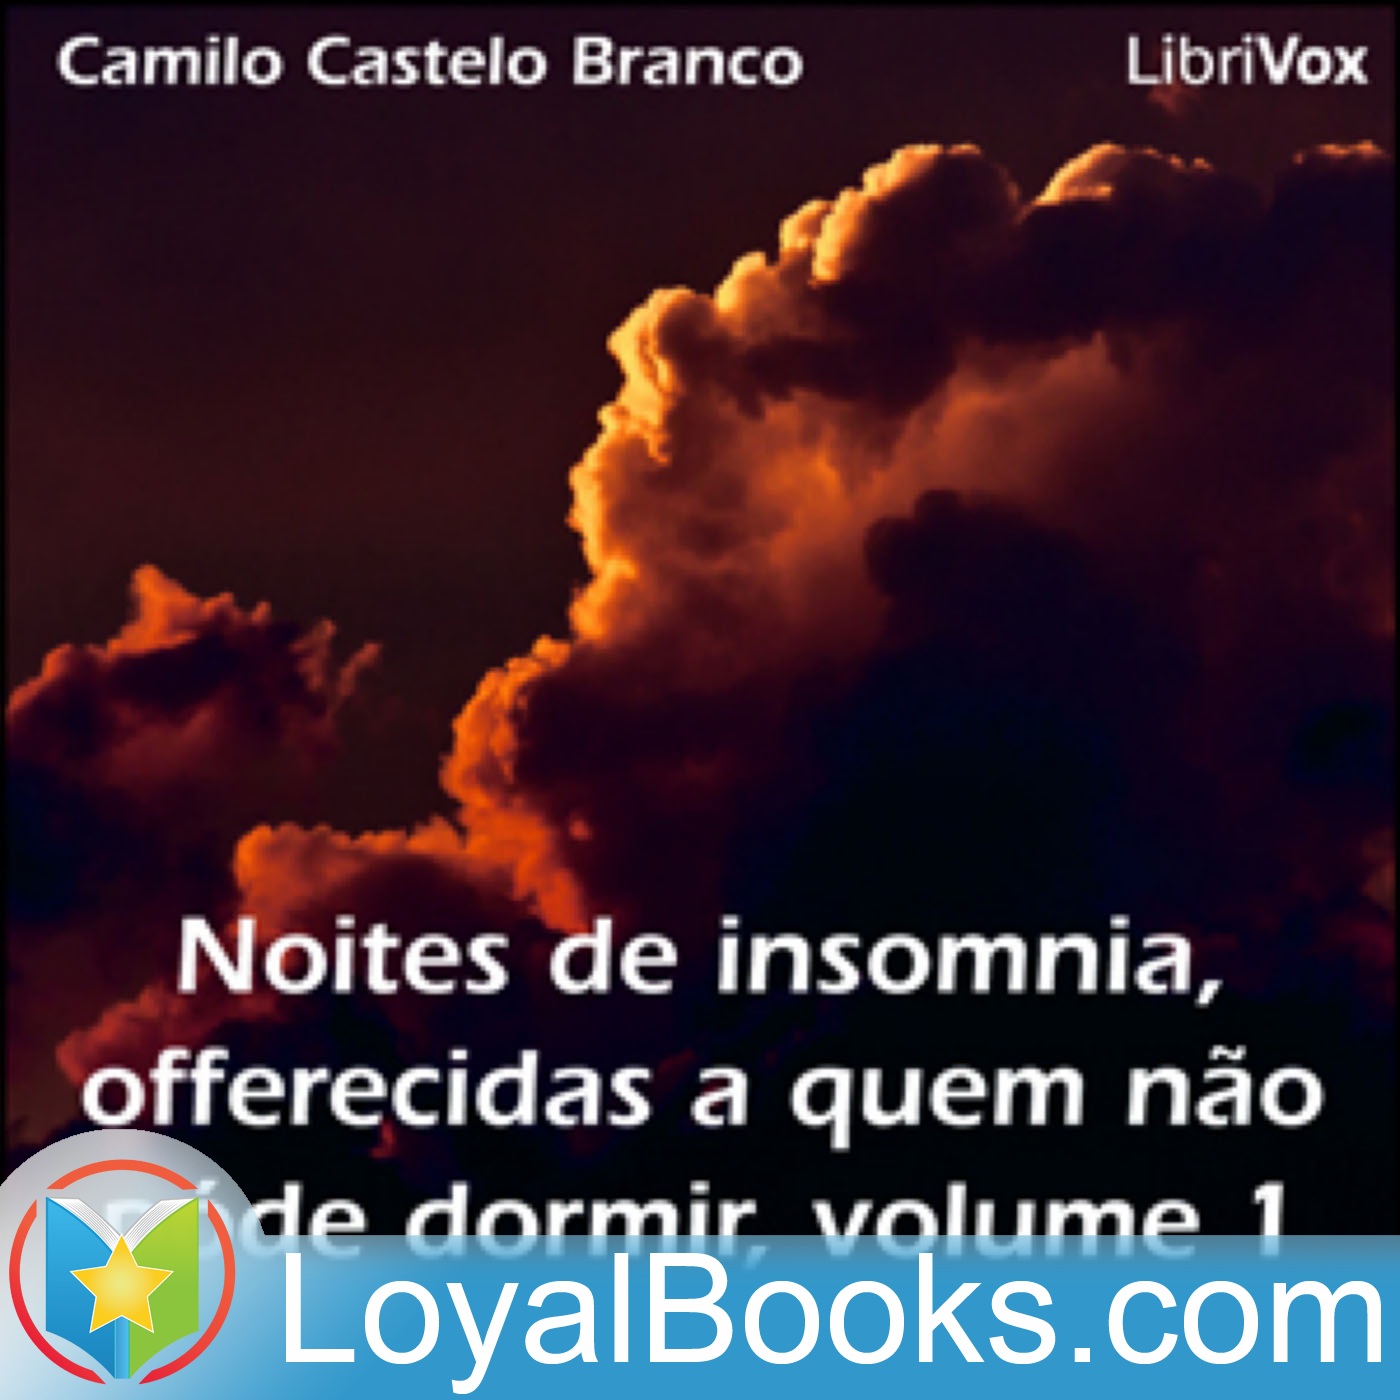 Noites de insomnia, offerecidas a quem não póde dormir, volume 1 by Camilo Ferreira Botelho Castelo Branco